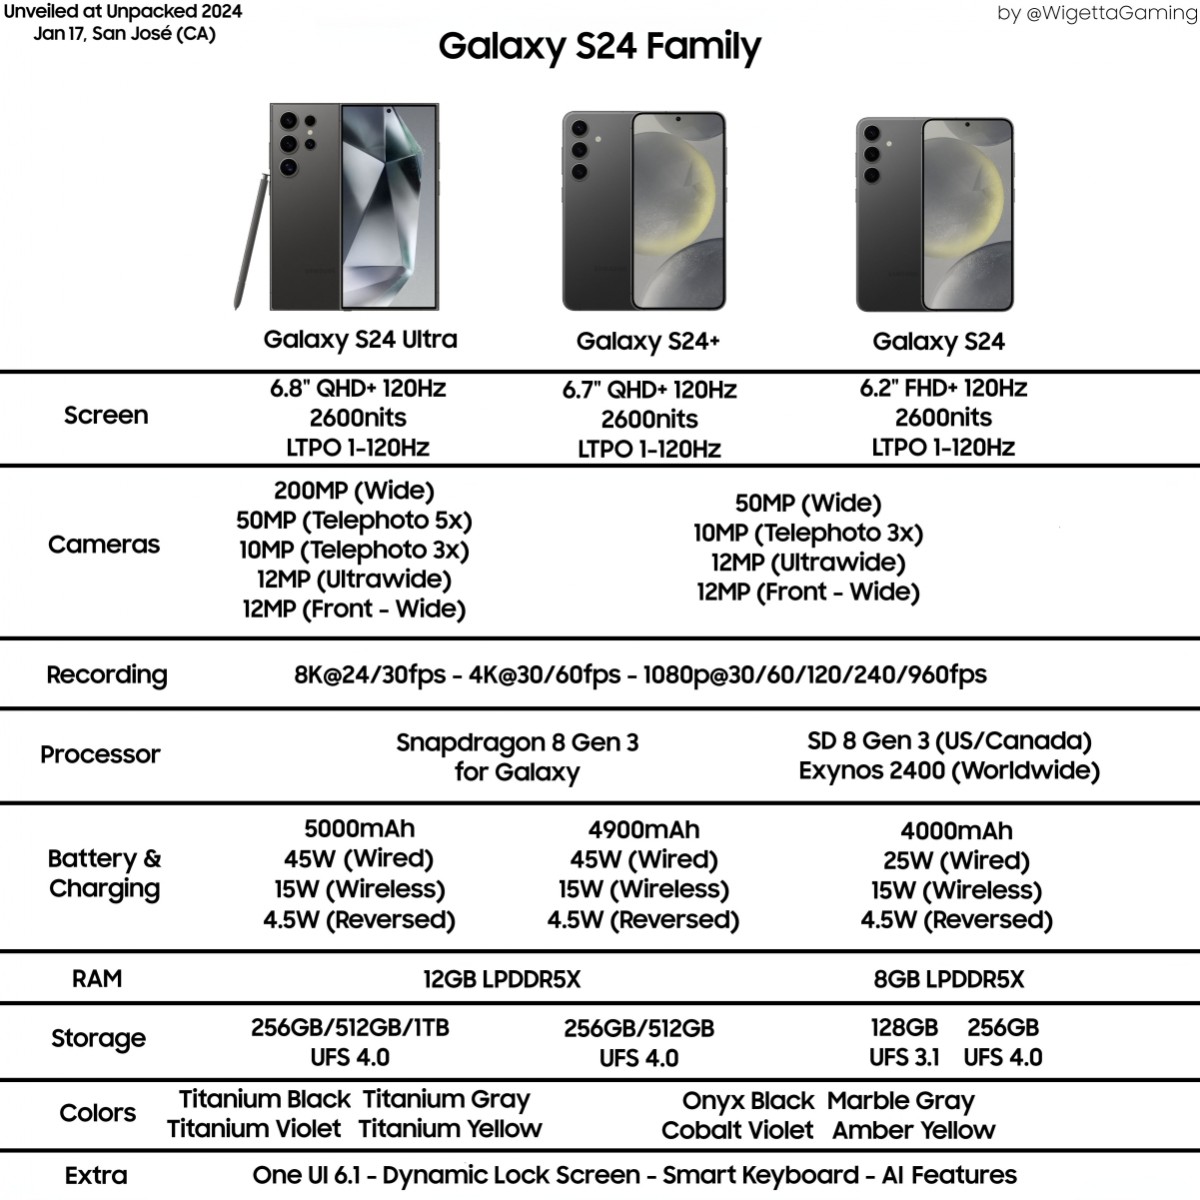 Samsung Galaxy S24, S24+ to come cheaper in EU, North America with SD8 Gen 3